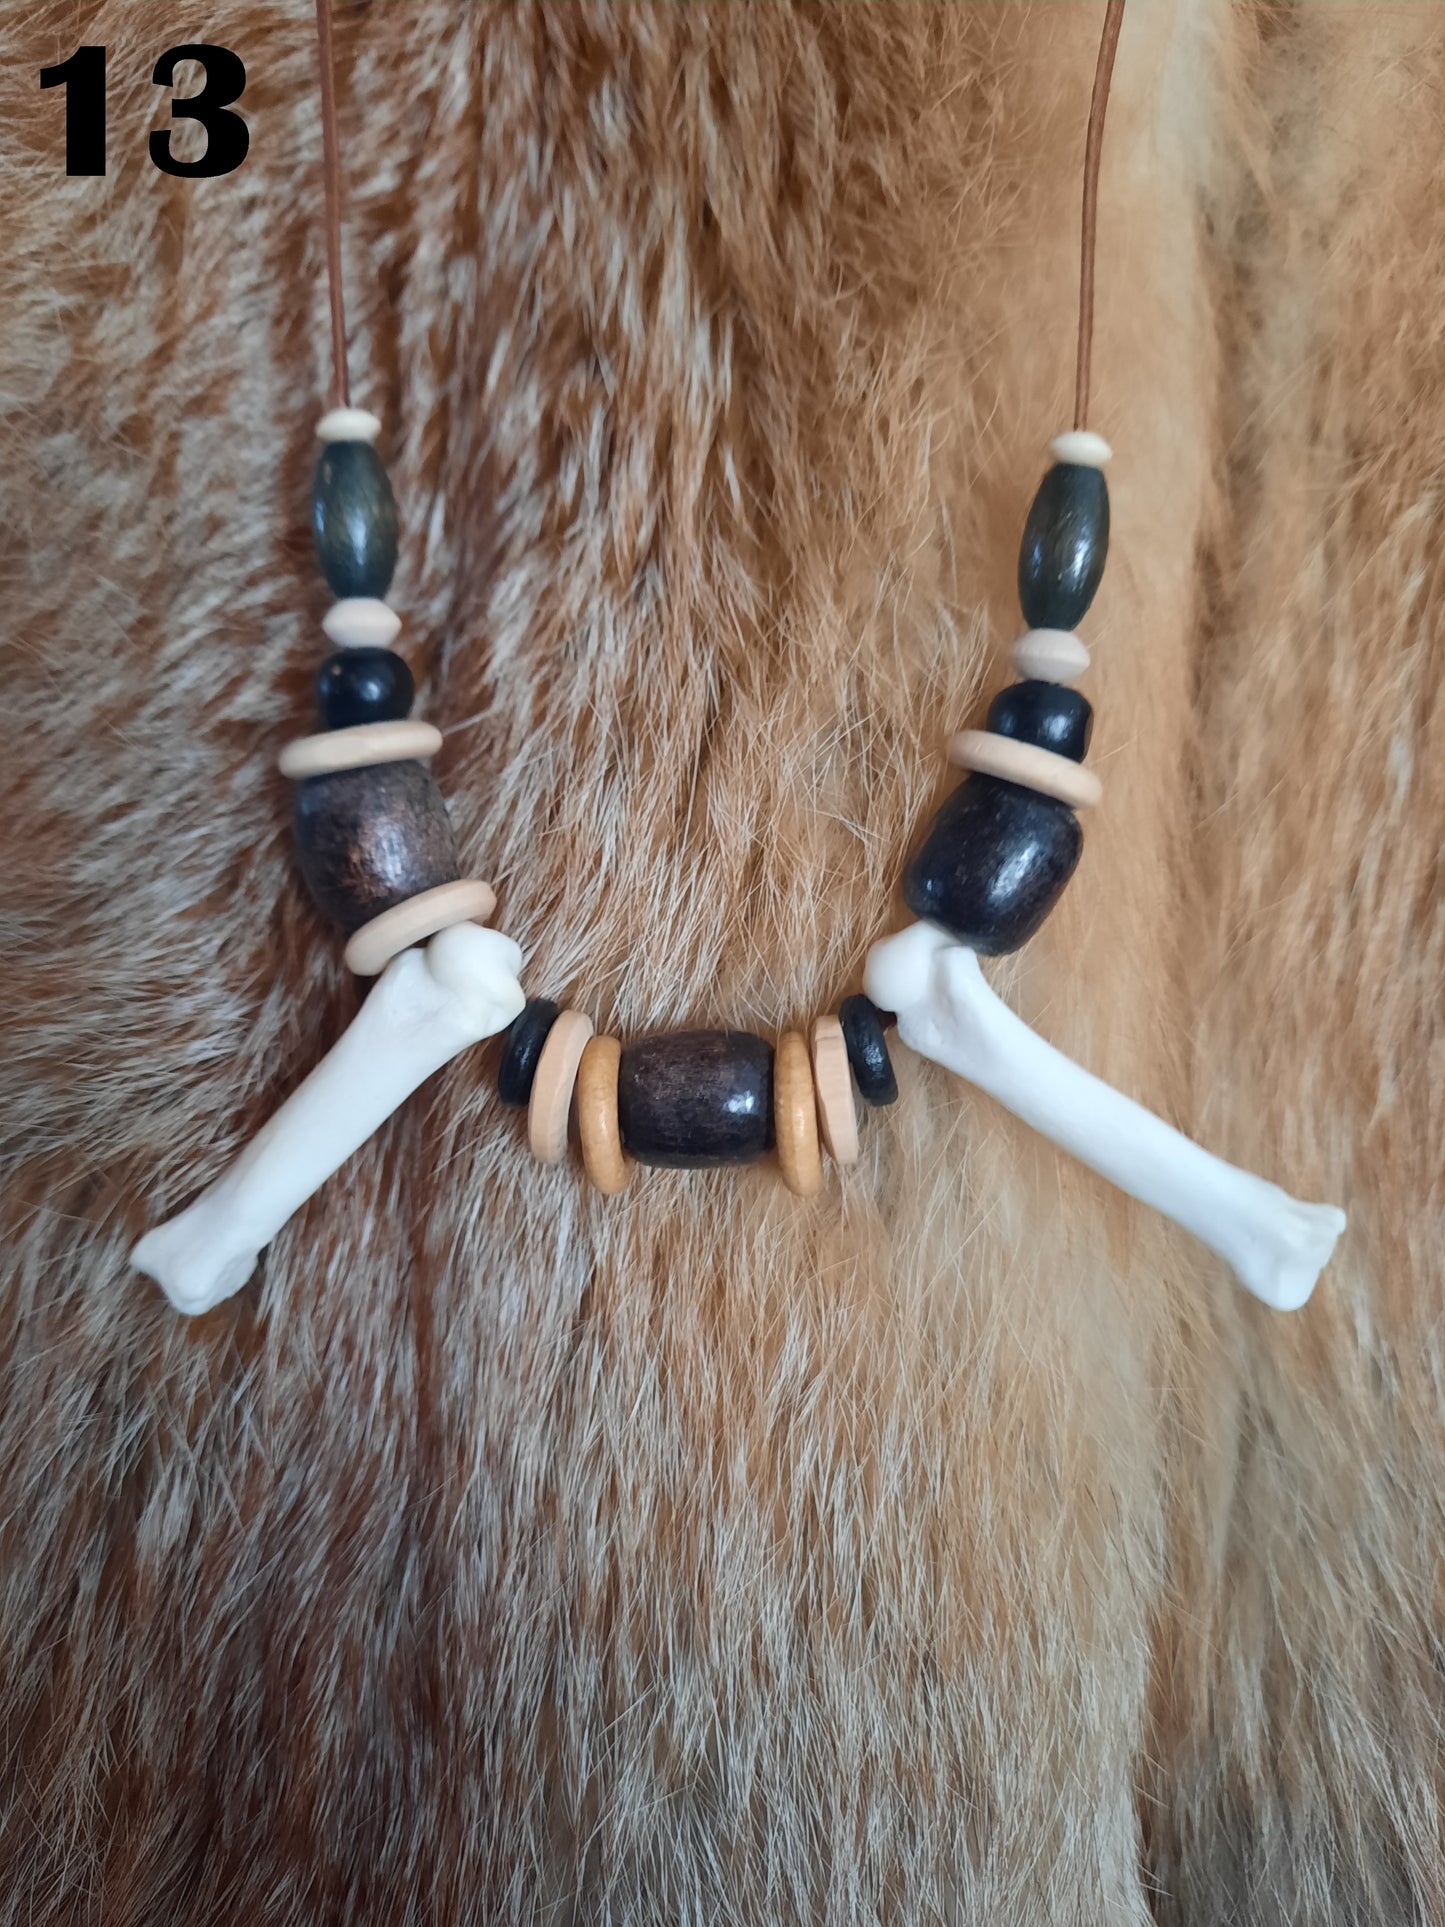 Bear Bone Necklace - Custom